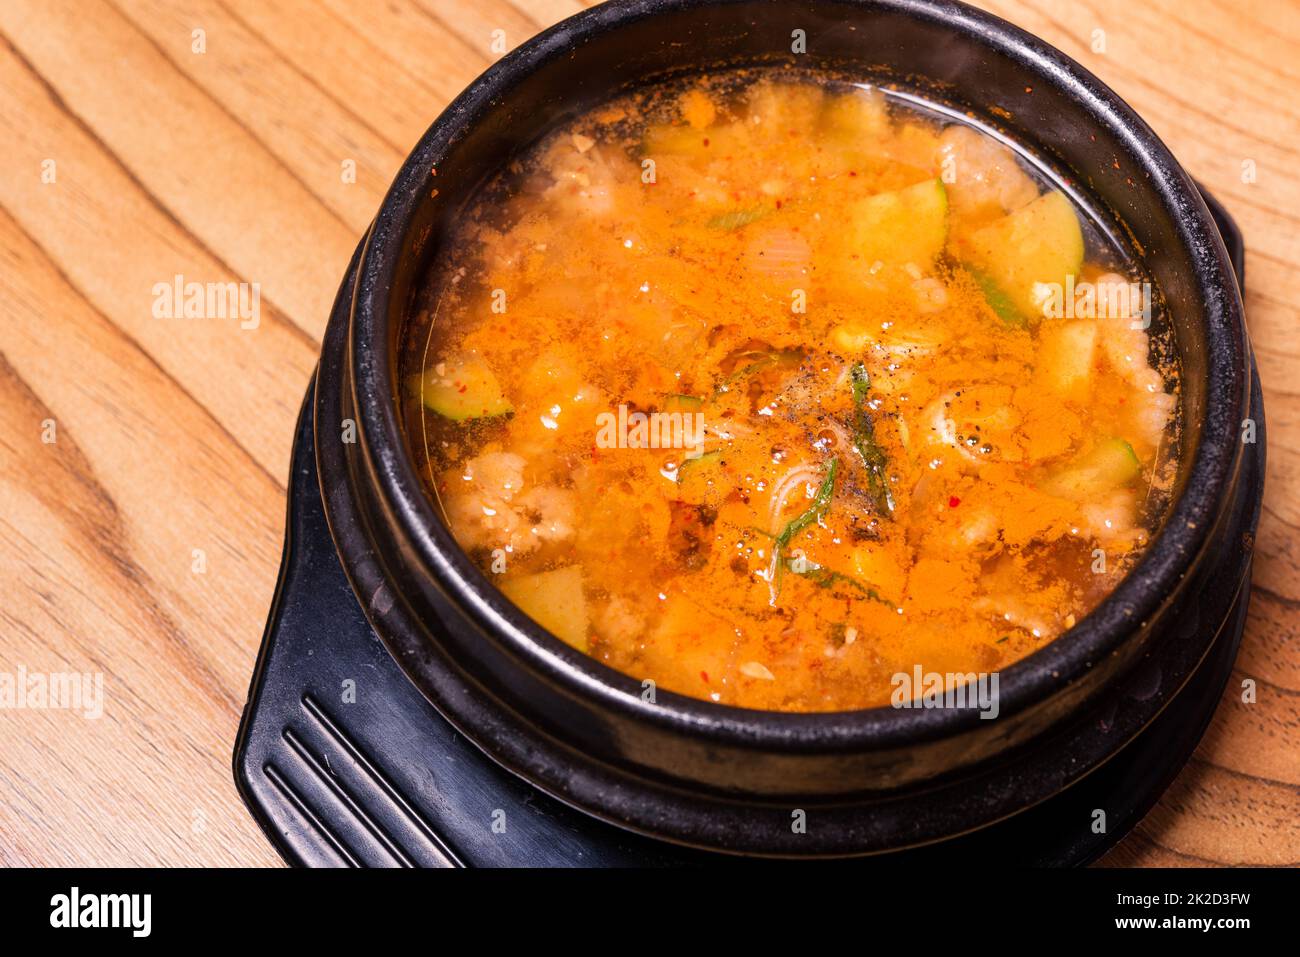 Soupe traditionnelle coréenne Kimchi jjigae dans un bol du restaurant Banque D'Images